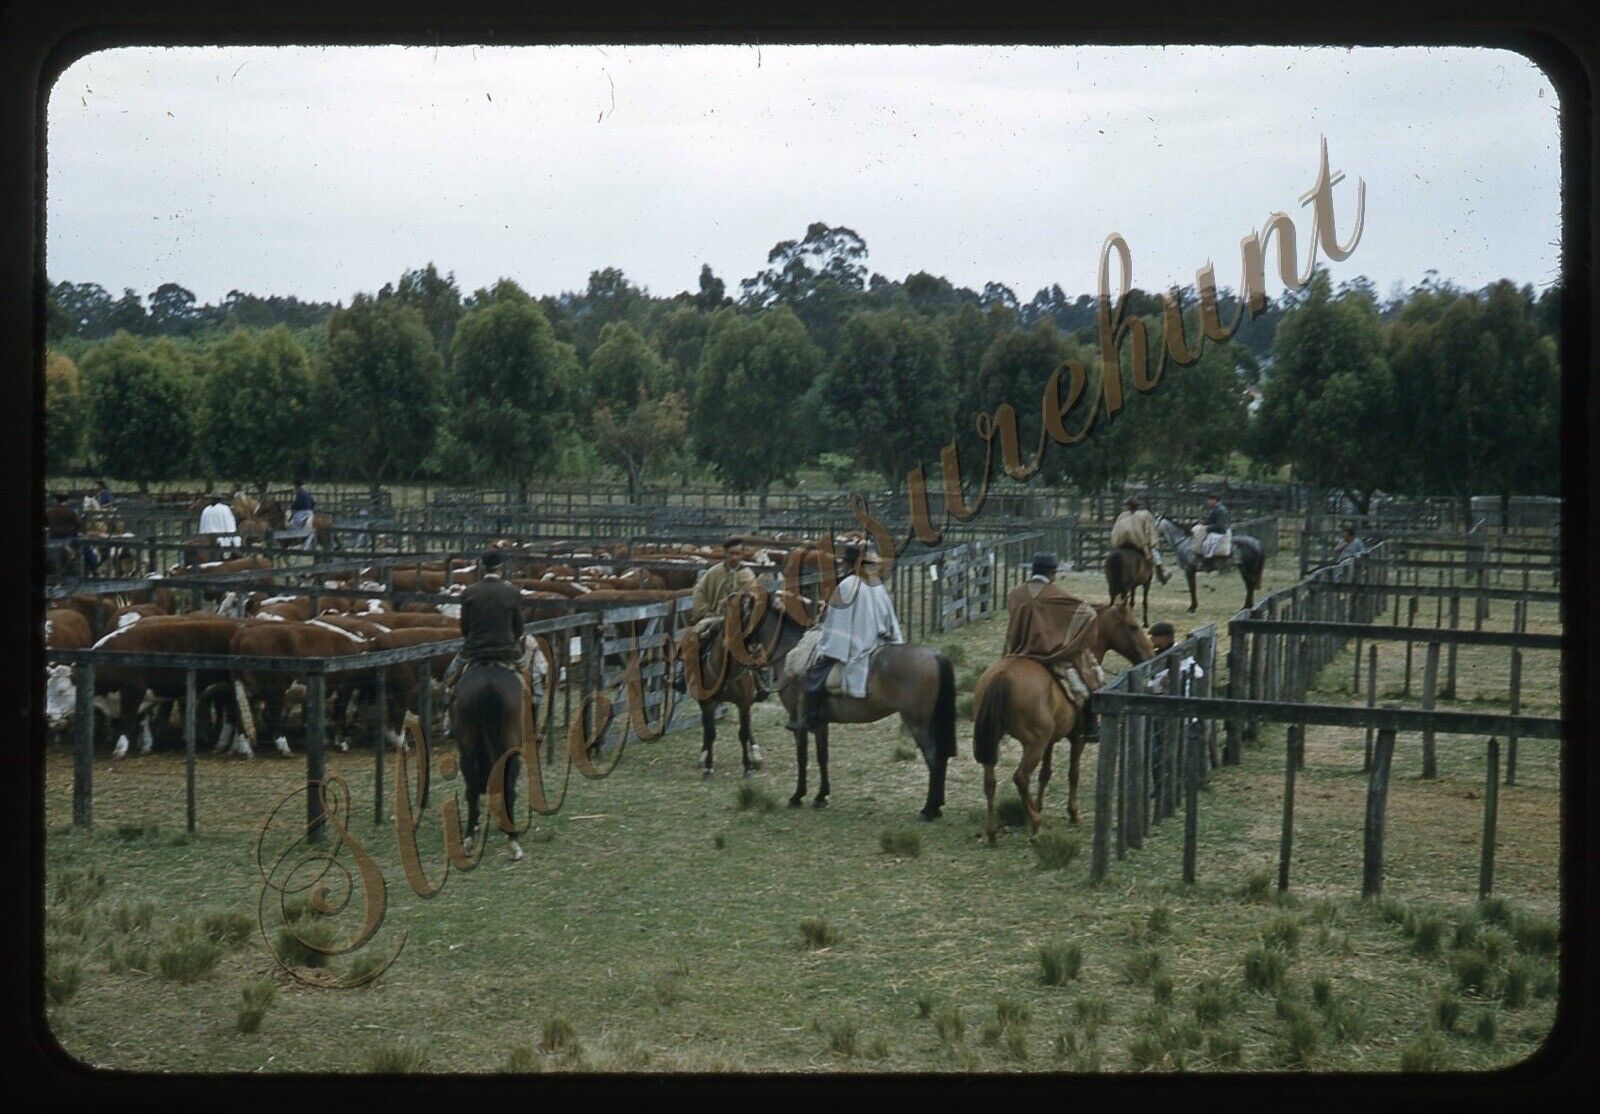 Argentina Horses Cattle Men 35mm Slide 1950s Red Border Kodachrome